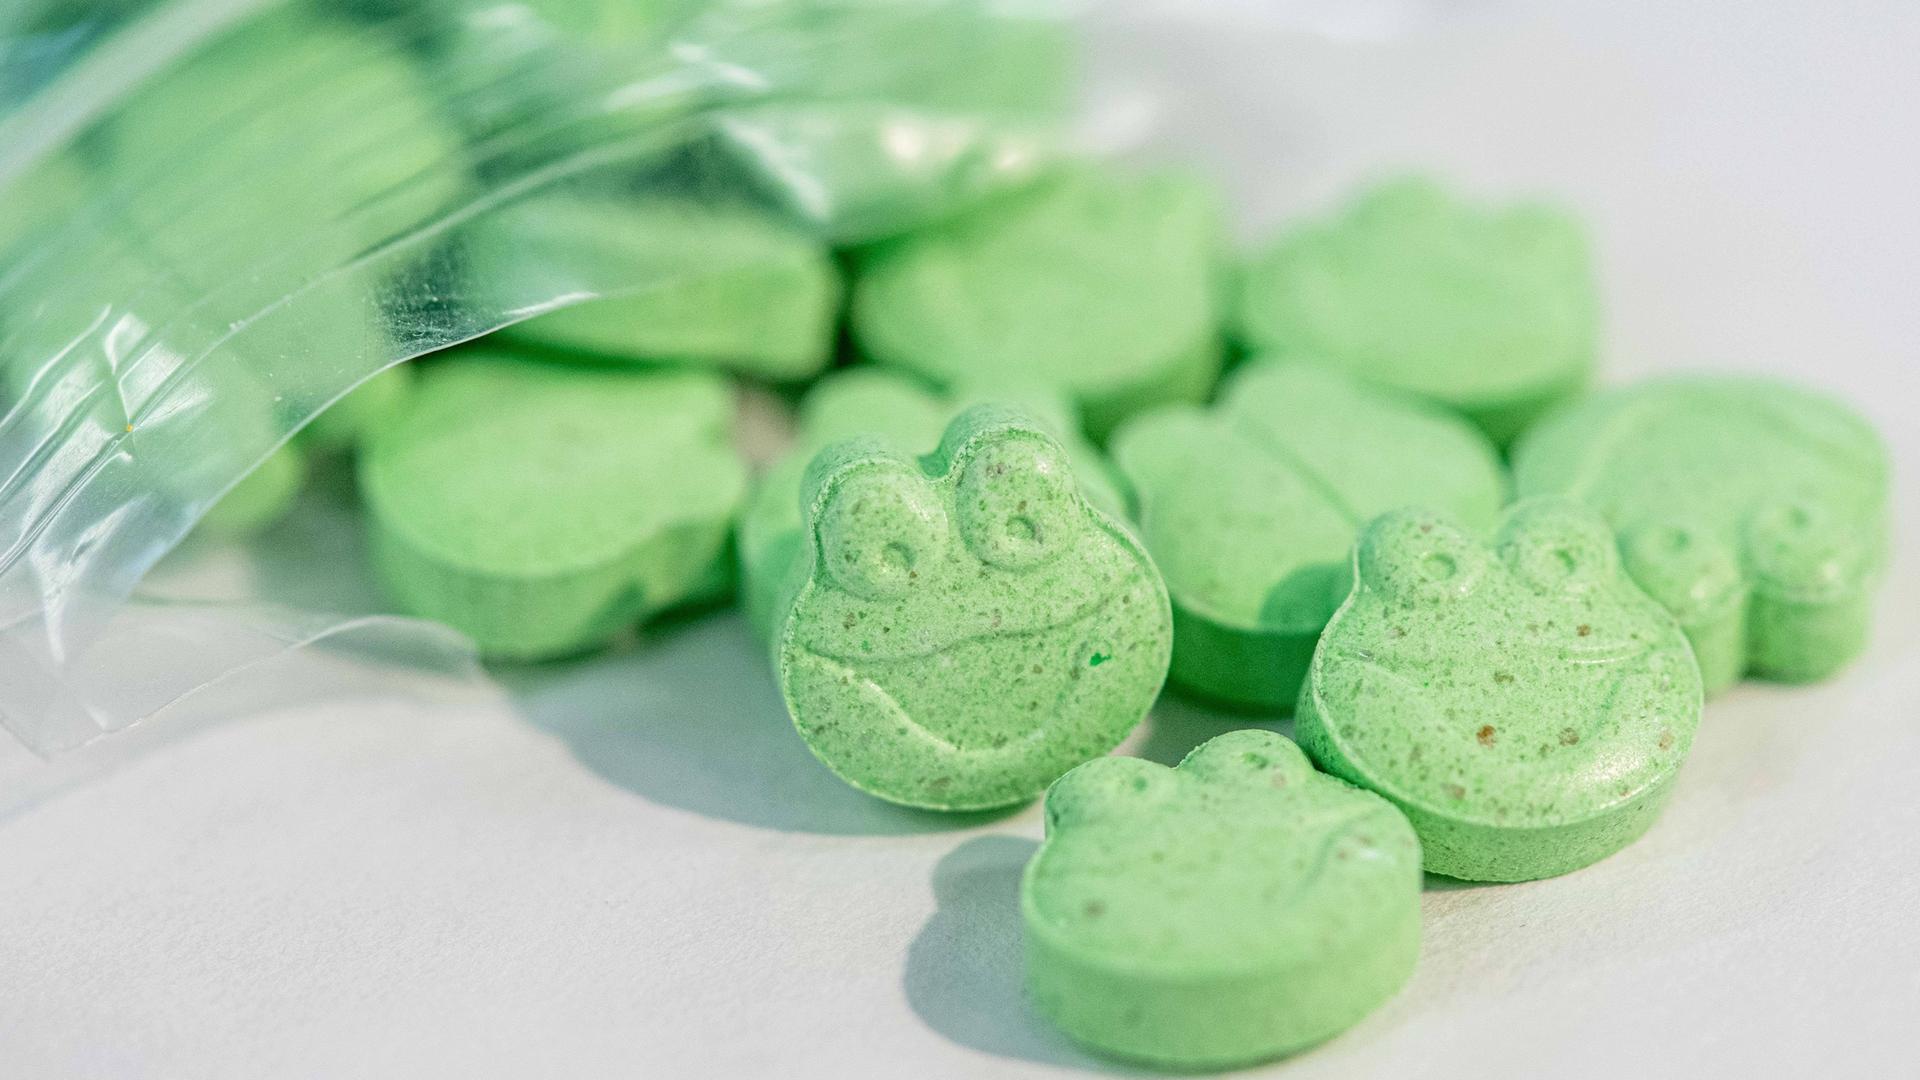 Grüne Ecstasy-Tabletten in Form eines Fischkopfes quellen aus einer kleinen Plastiktüte.